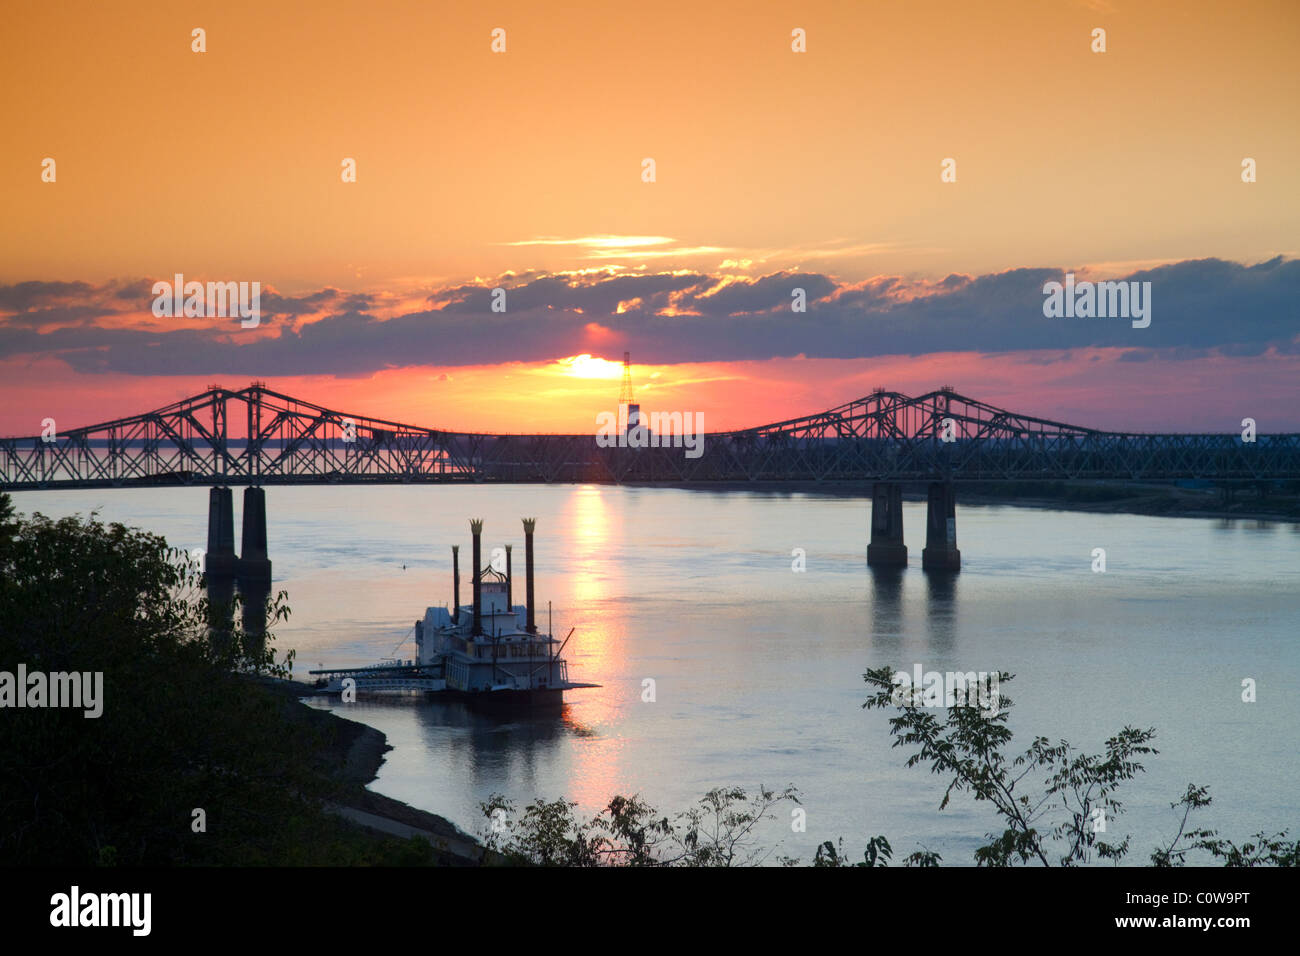 Dampfschiff auf der Natchez-Vidalia Brücken über den Mississippi River zwischen Vidalia, Louisiana und Natchez, Mississippi. Stockfoto